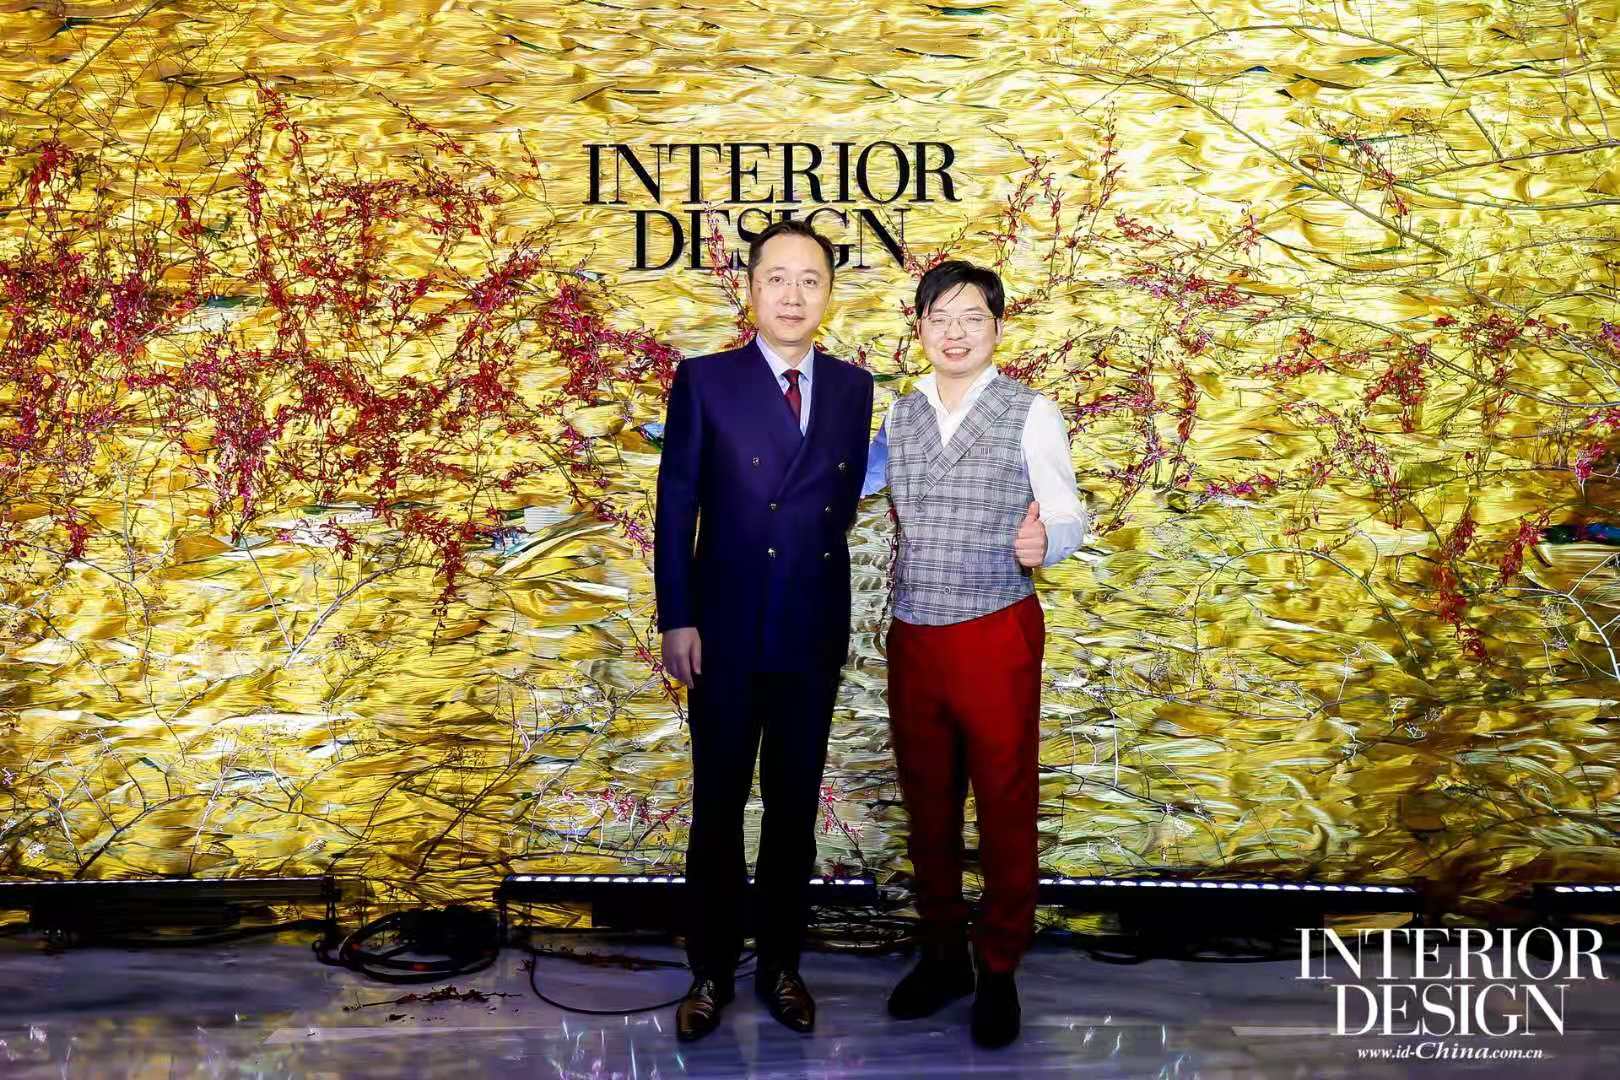 雷雨明先生 和 Interiror Design China董事⻓、出版⼈ 赵虎先生 合影